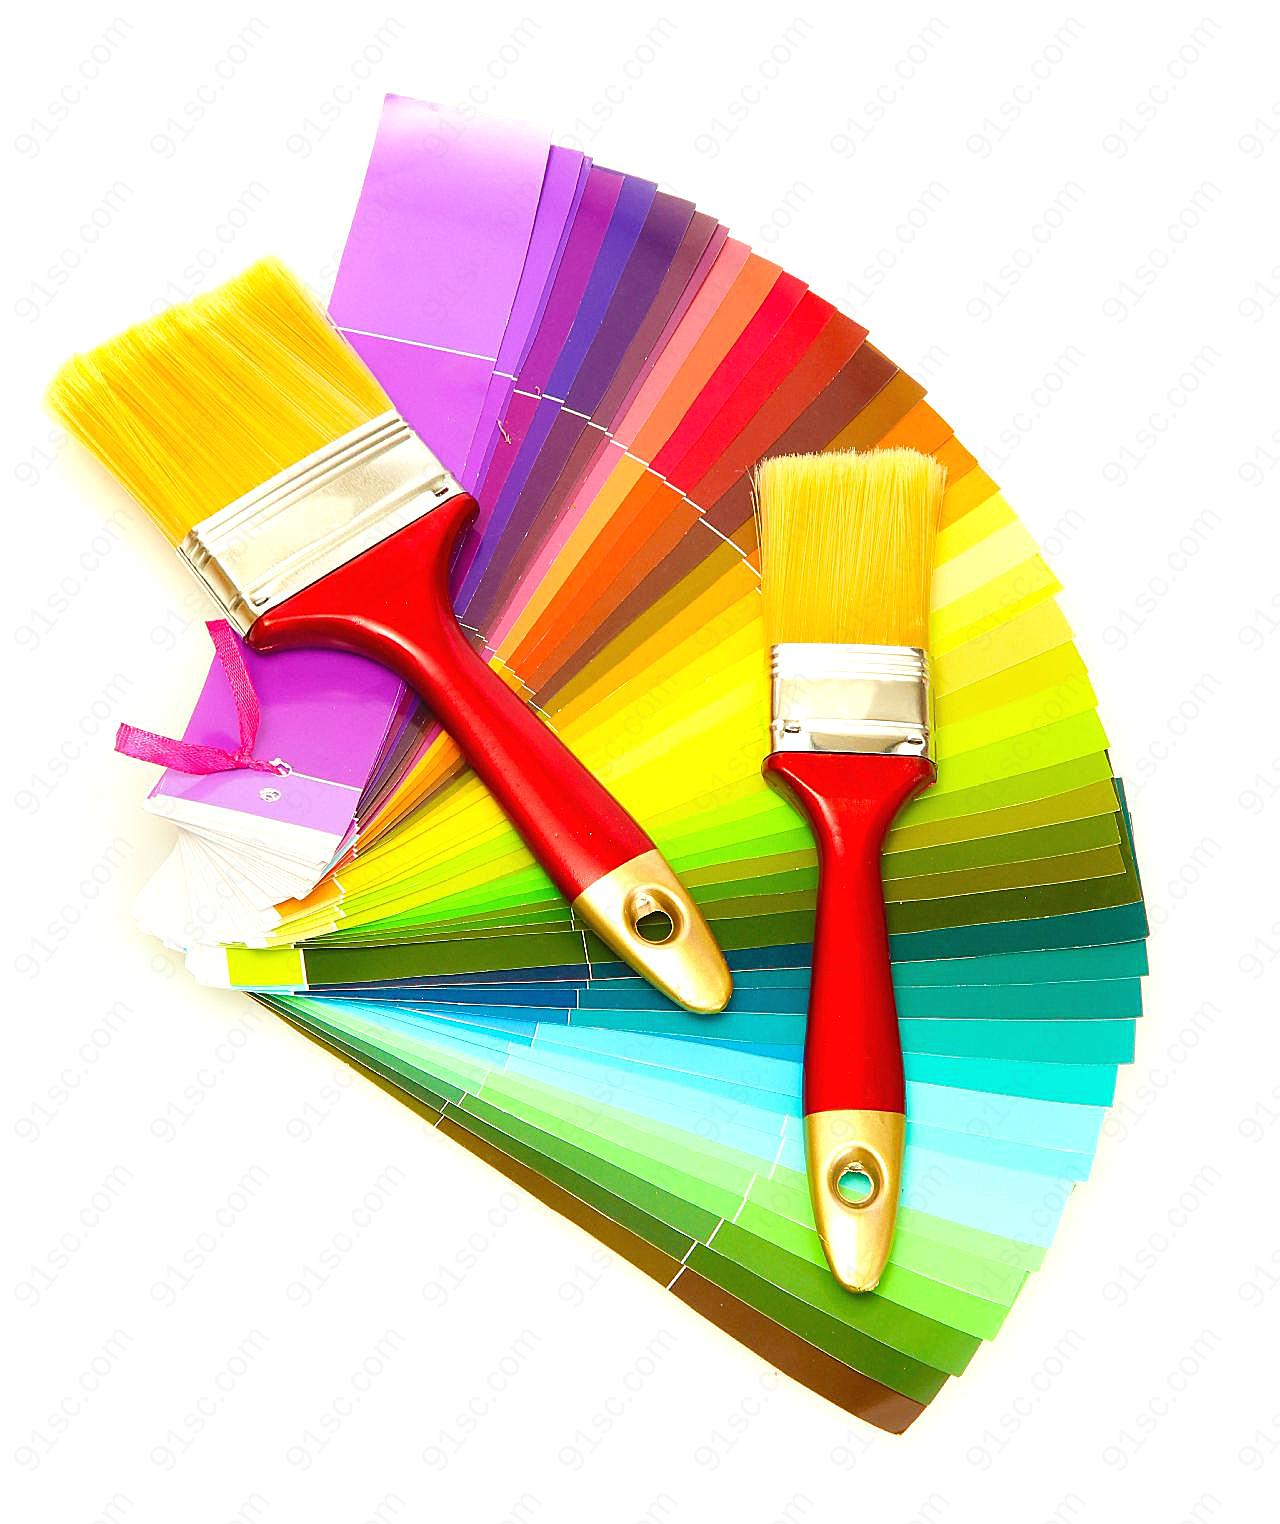 彩色纸和刷子图片下载创意设计图片